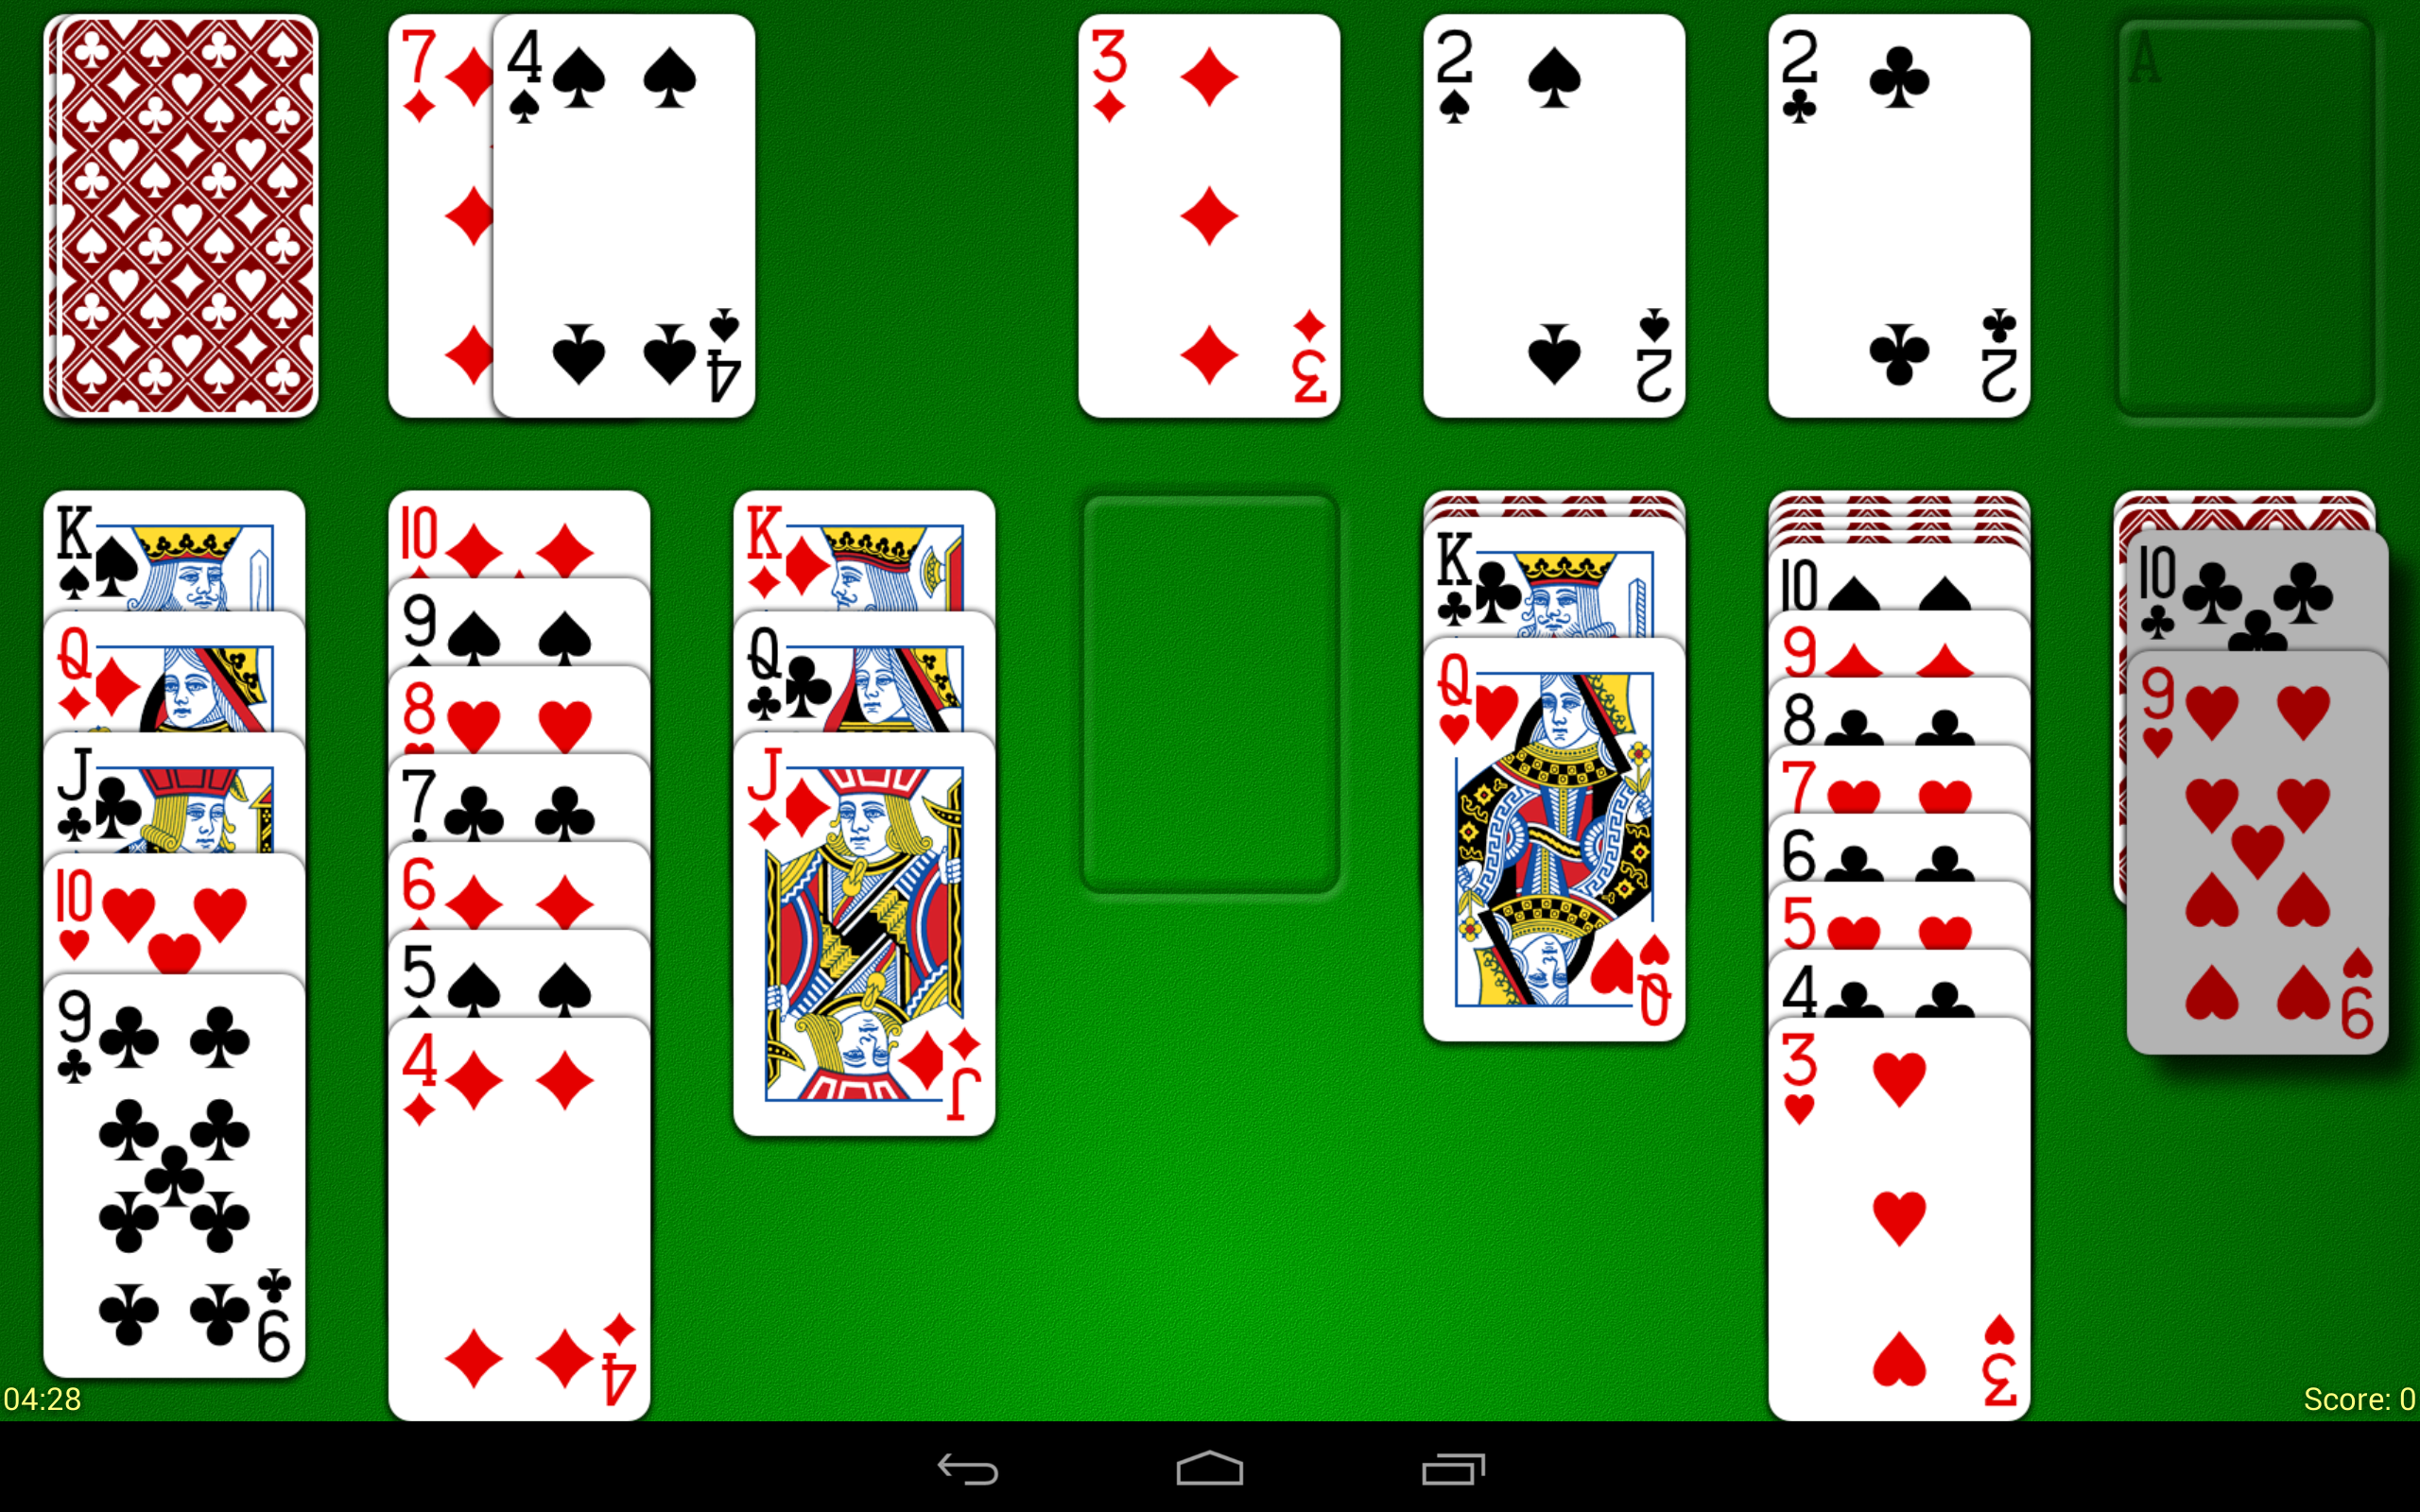 В какие игры можно играть с картами и как покер играть бесплатно онлайн 888 на деньги